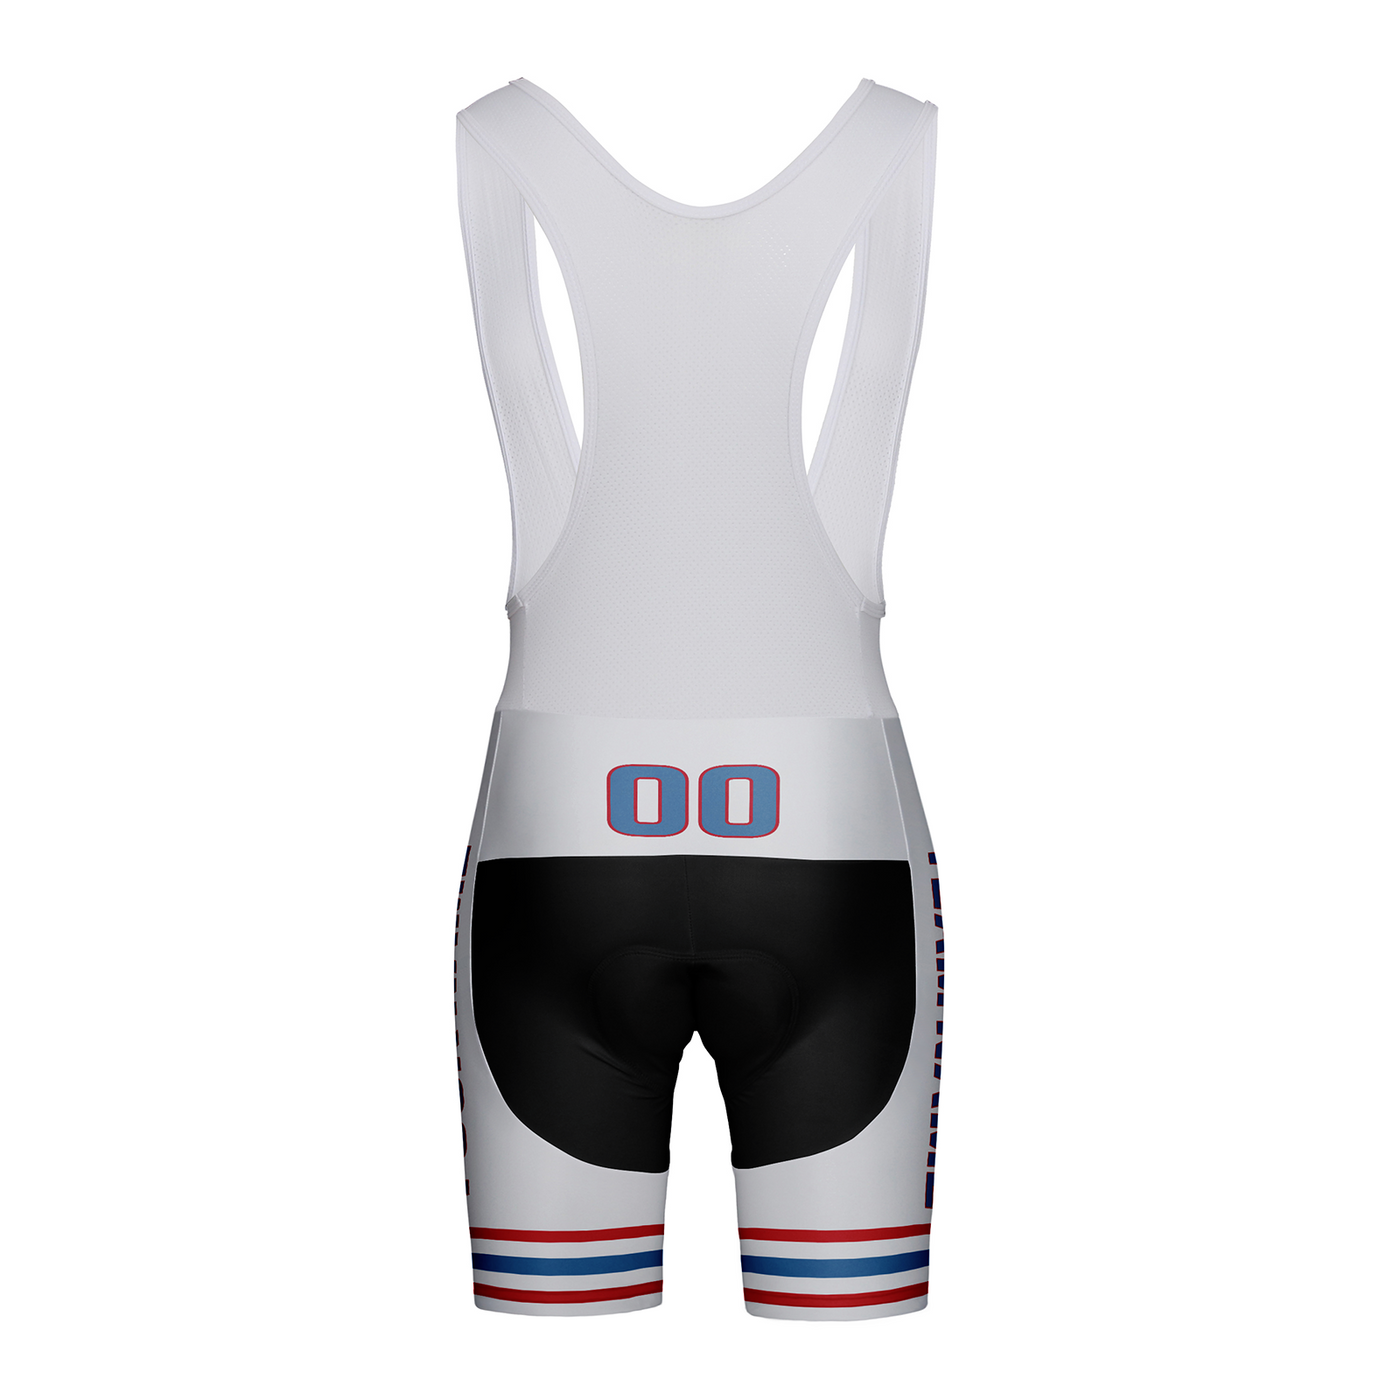 Customized Houston Team Unisex Cycling Bib Shorts